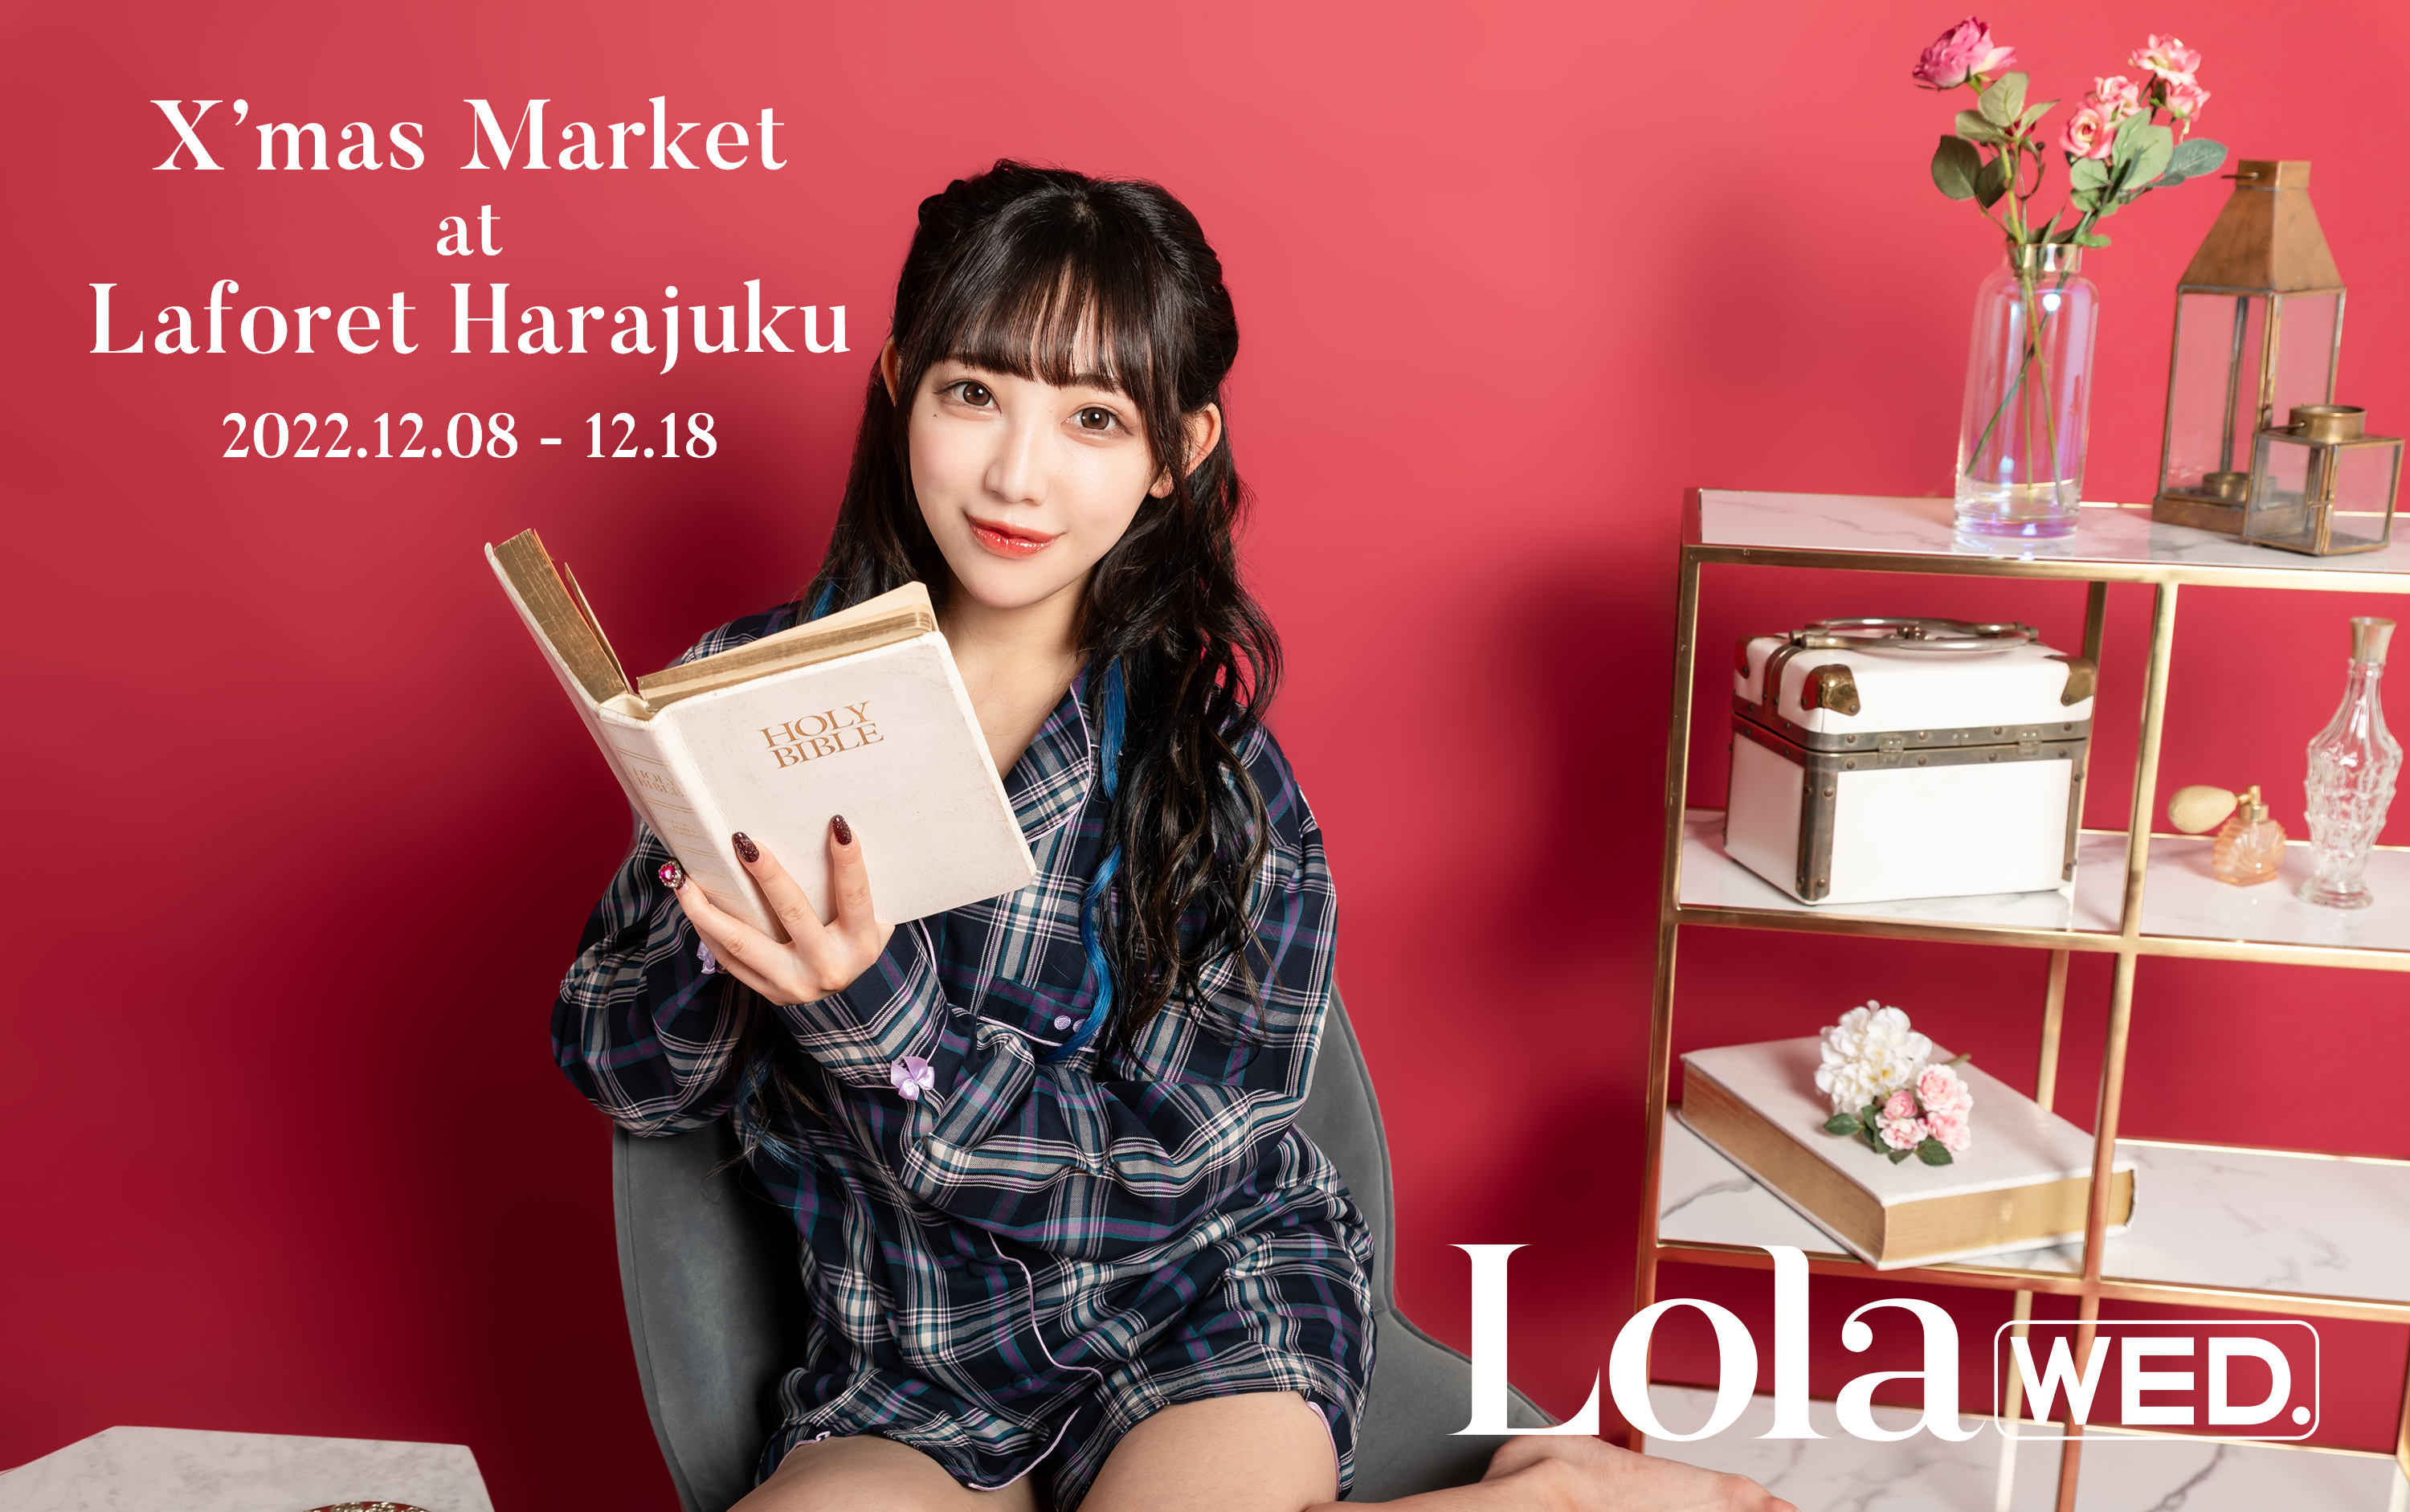 Lola wed. X'mas market at Laforet Harajuku 開催！